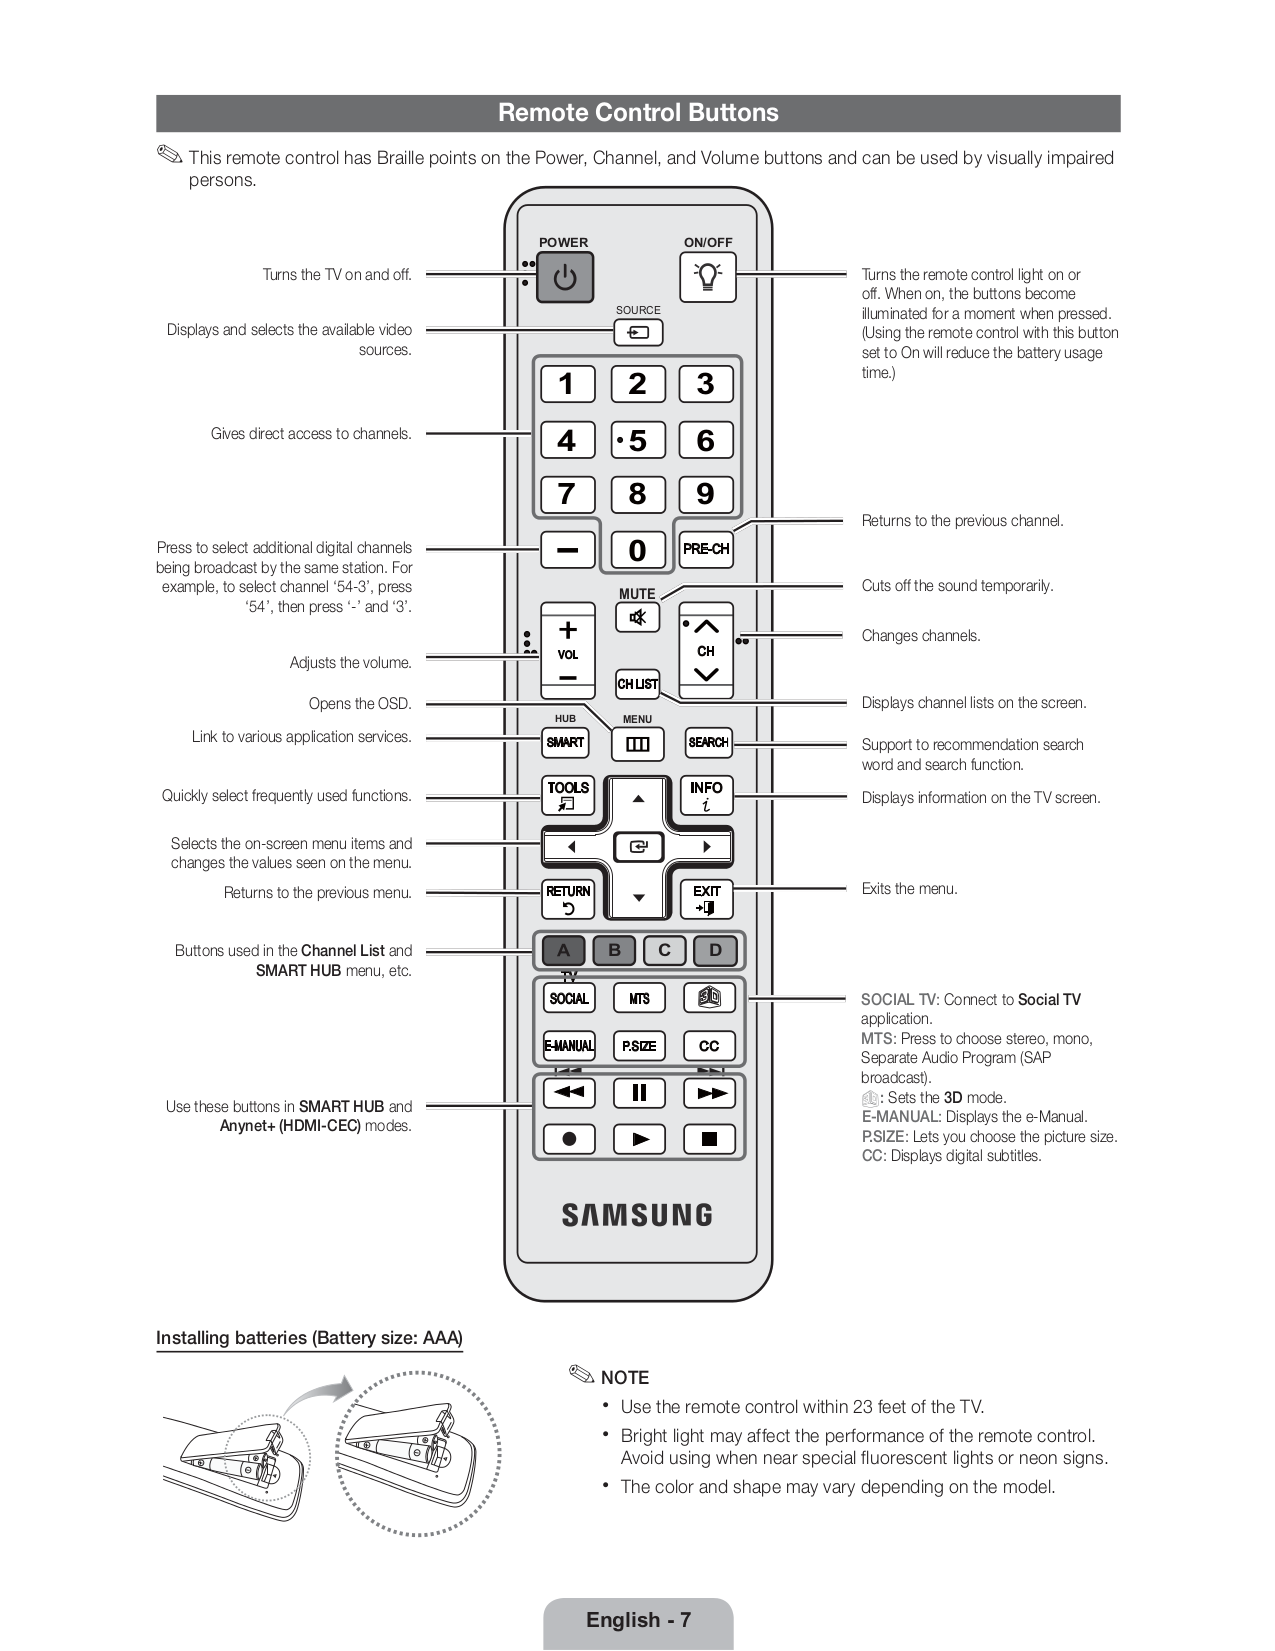 Меню пульта телевизора самсунг. Пульт для телевизора Samsung описание кнопок. Функциональные кнопки на пульте телевизора самсунг. Телевизор Samsung ue32c4000pw. Samsung le37c530f1w пульт.